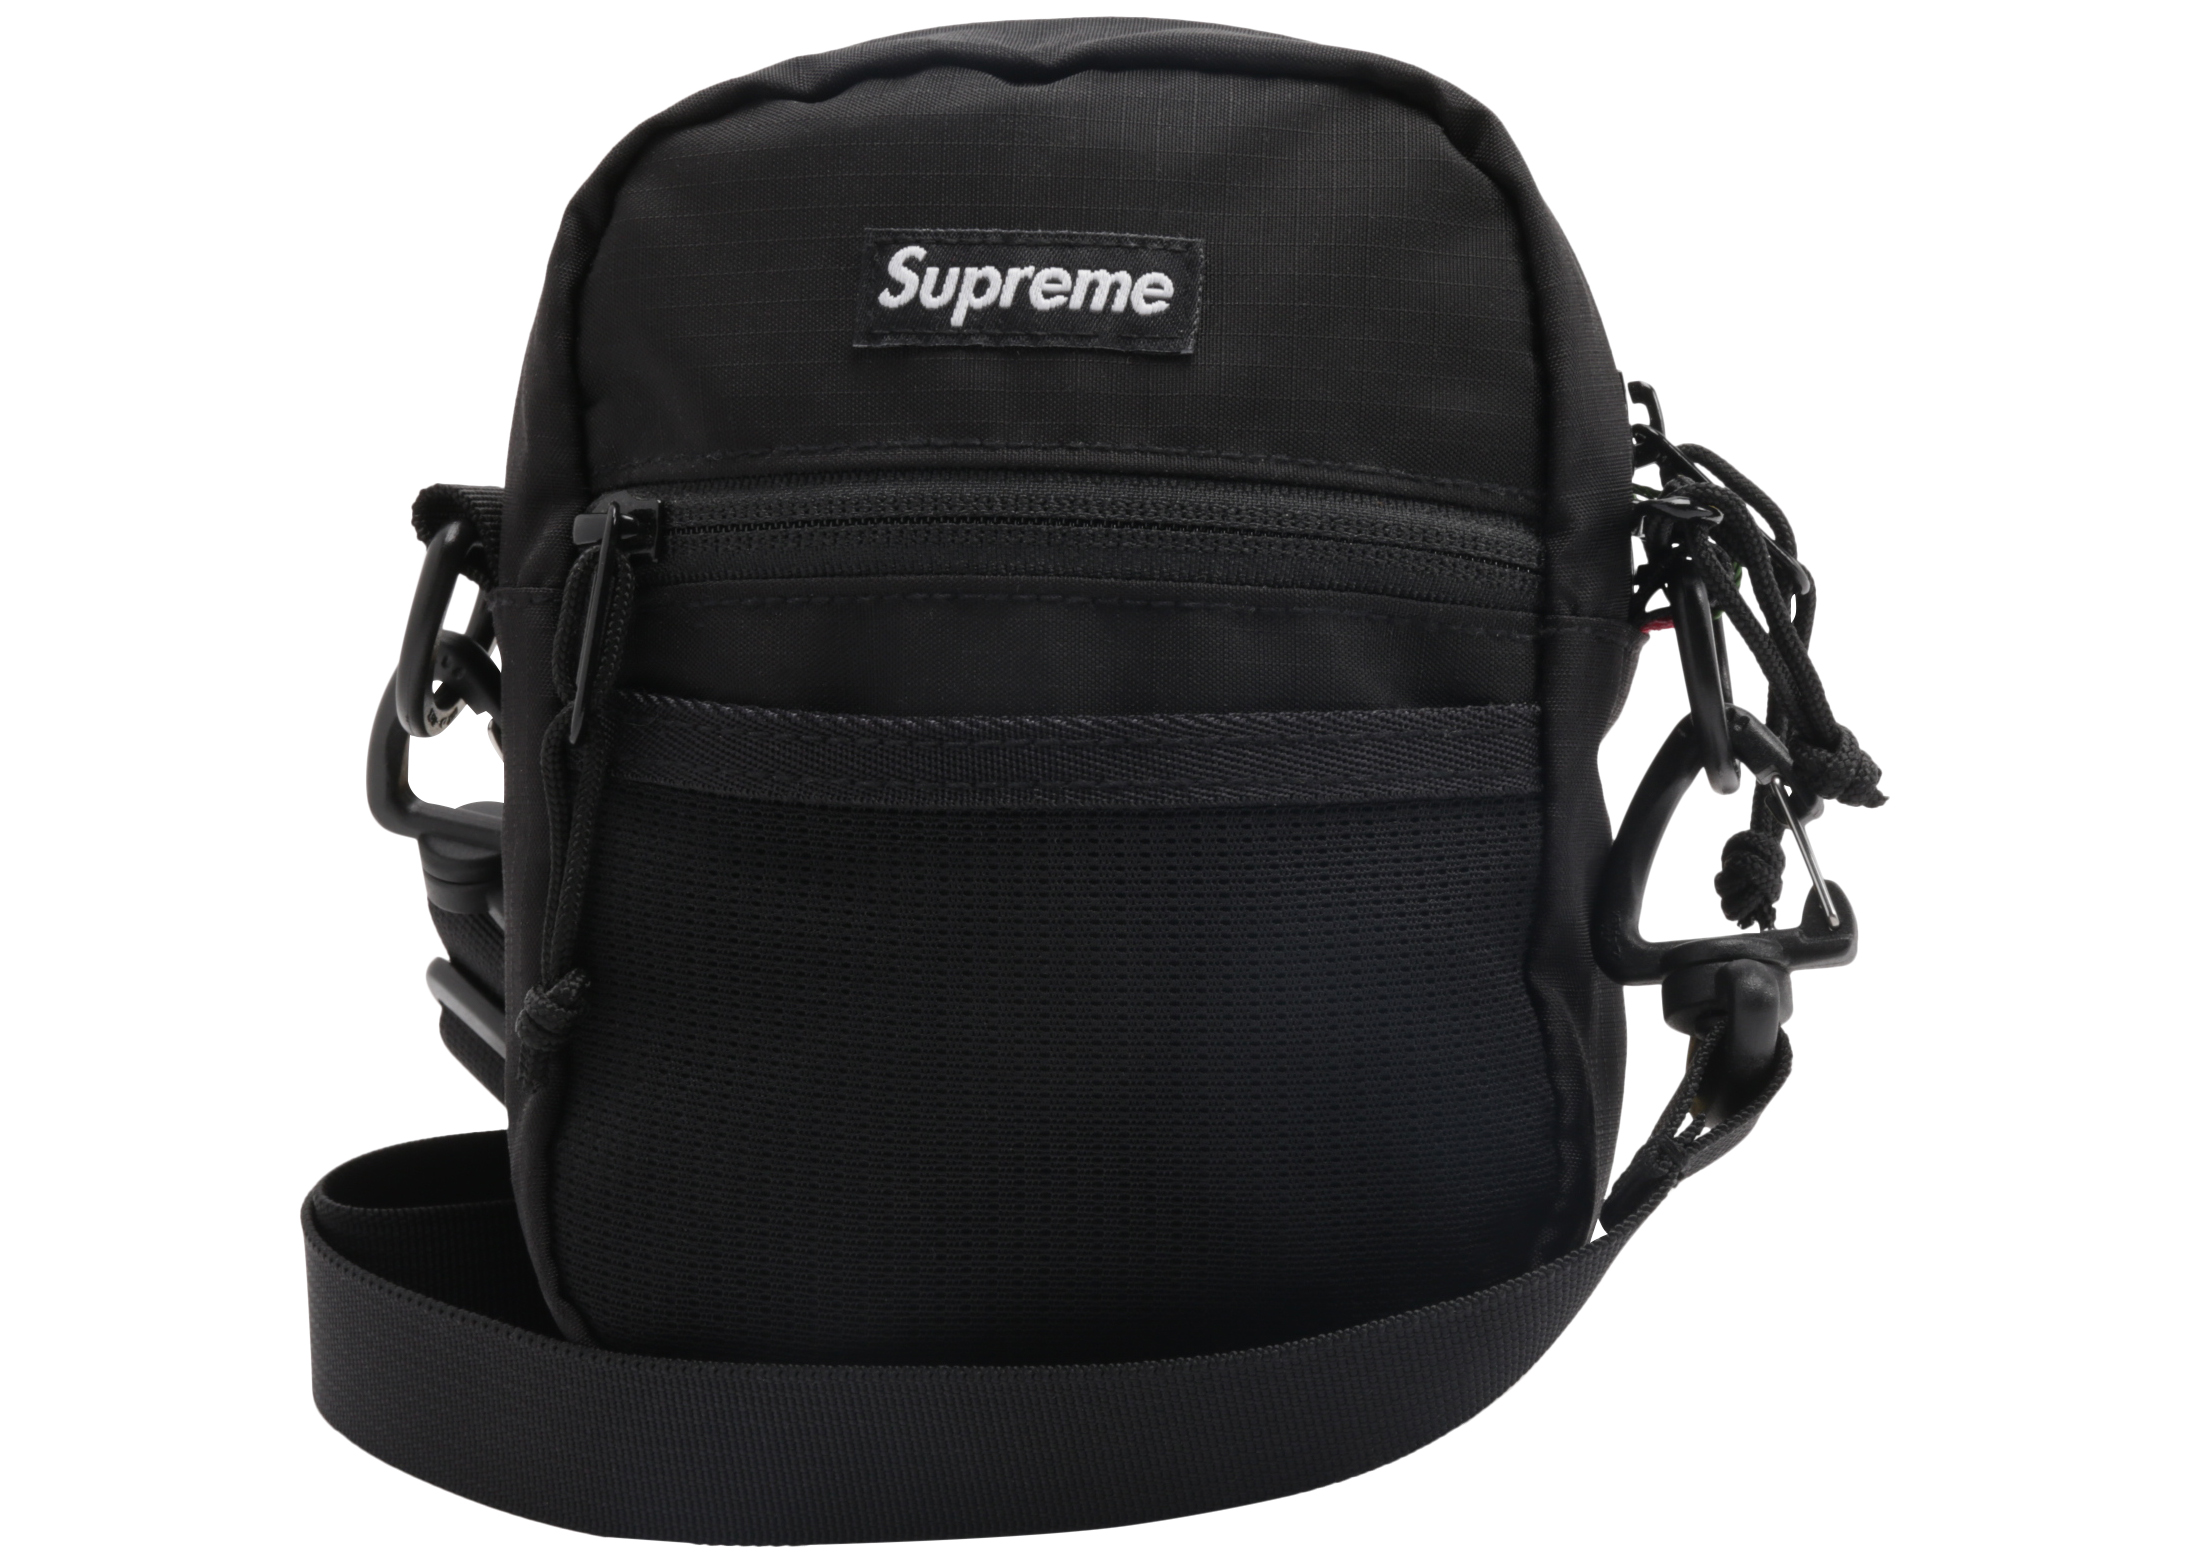 Supreme Small Shoulder Bag Black - SS17